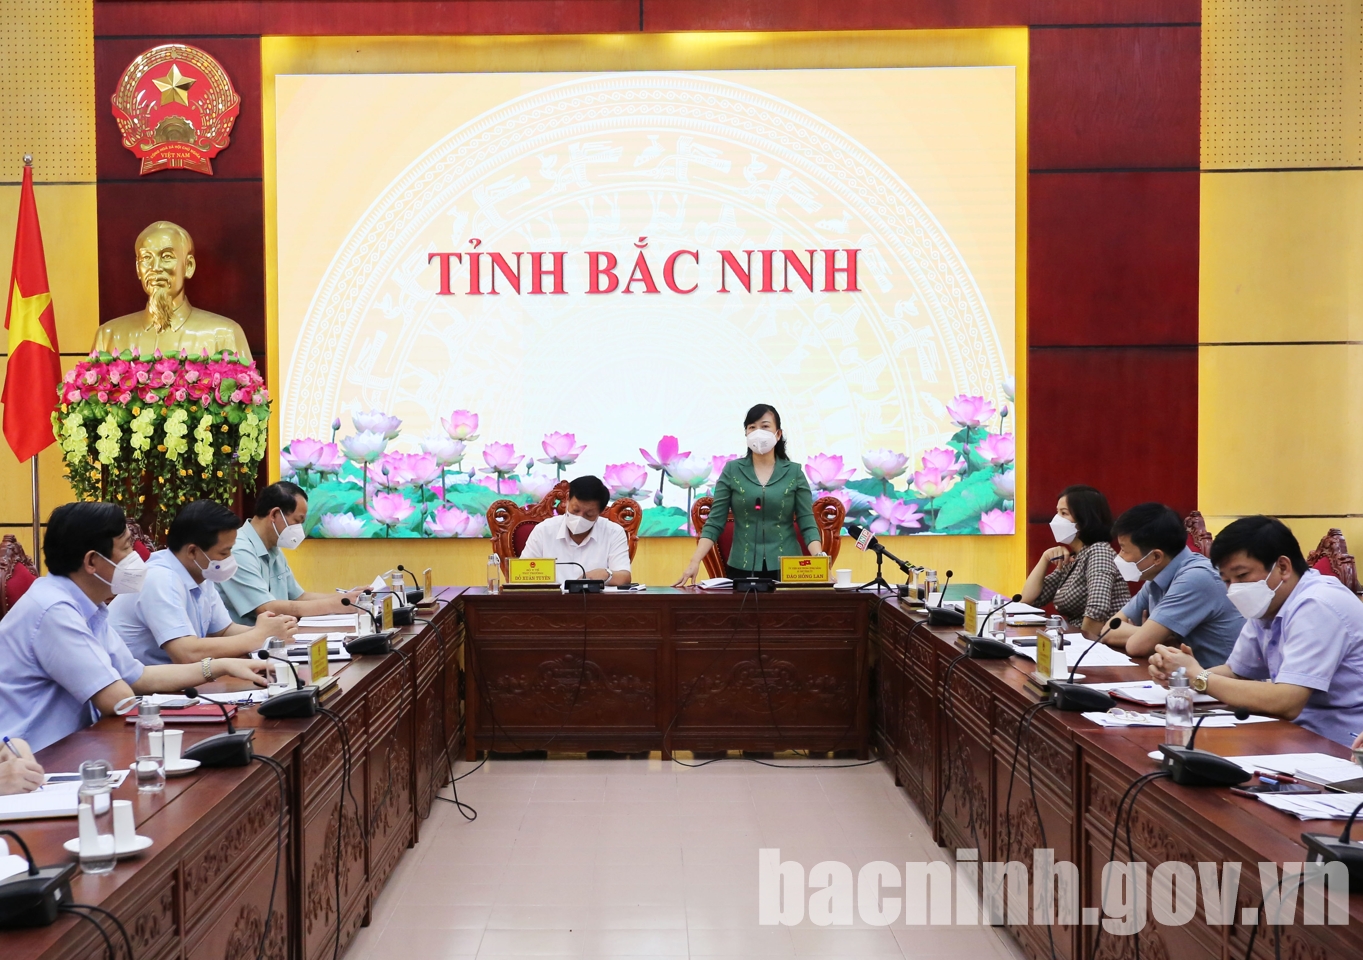 Thủ tướng Chính phủ đề nghị Bộ Y tế dành nguồn vắc xin ưu tiên cho tỉnh Bắc Ninh và tỉnh Bắc Giang